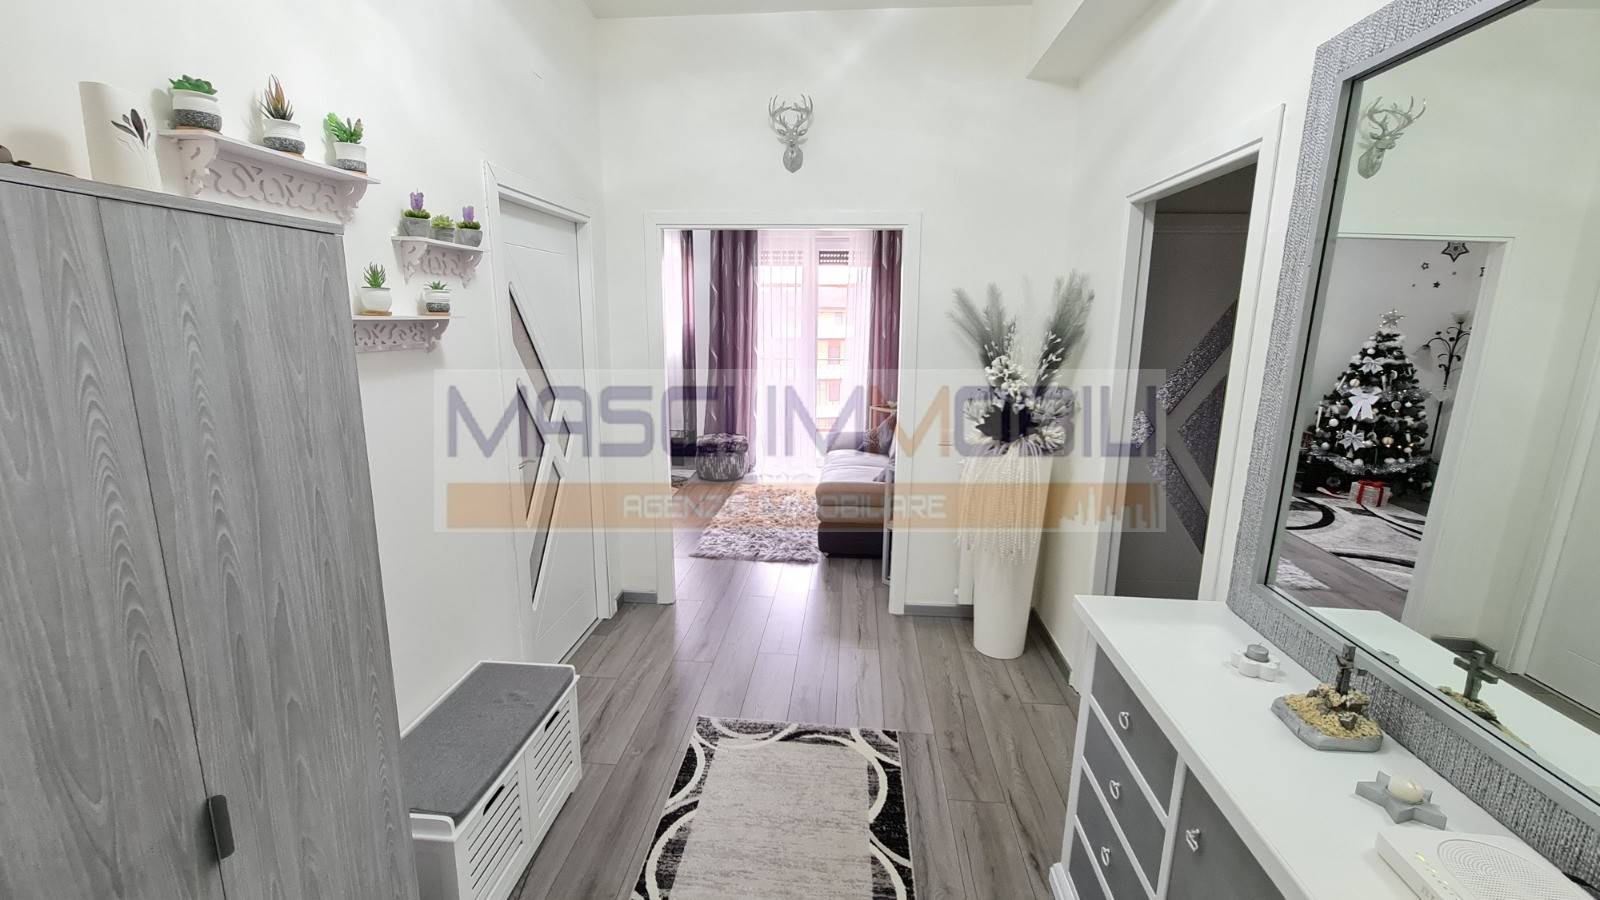 Appartamento in vendita a Civitella San Paolo, 3 locali, prezzo € 90.000 | CambioCasa.it